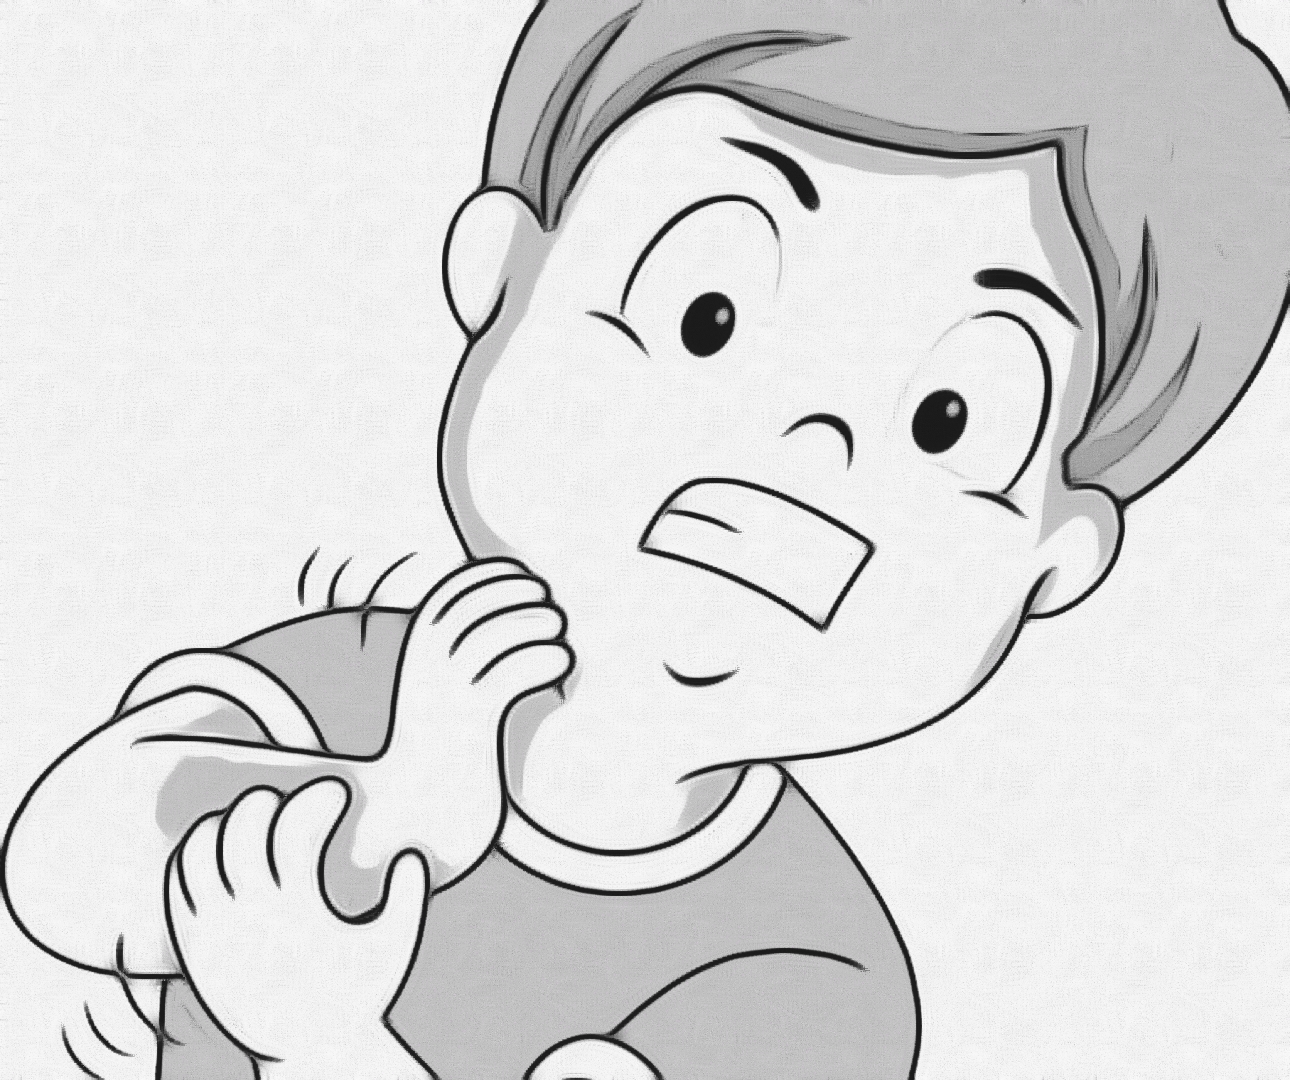 Dibujo de un niño con psoriasis rascándose el brazo